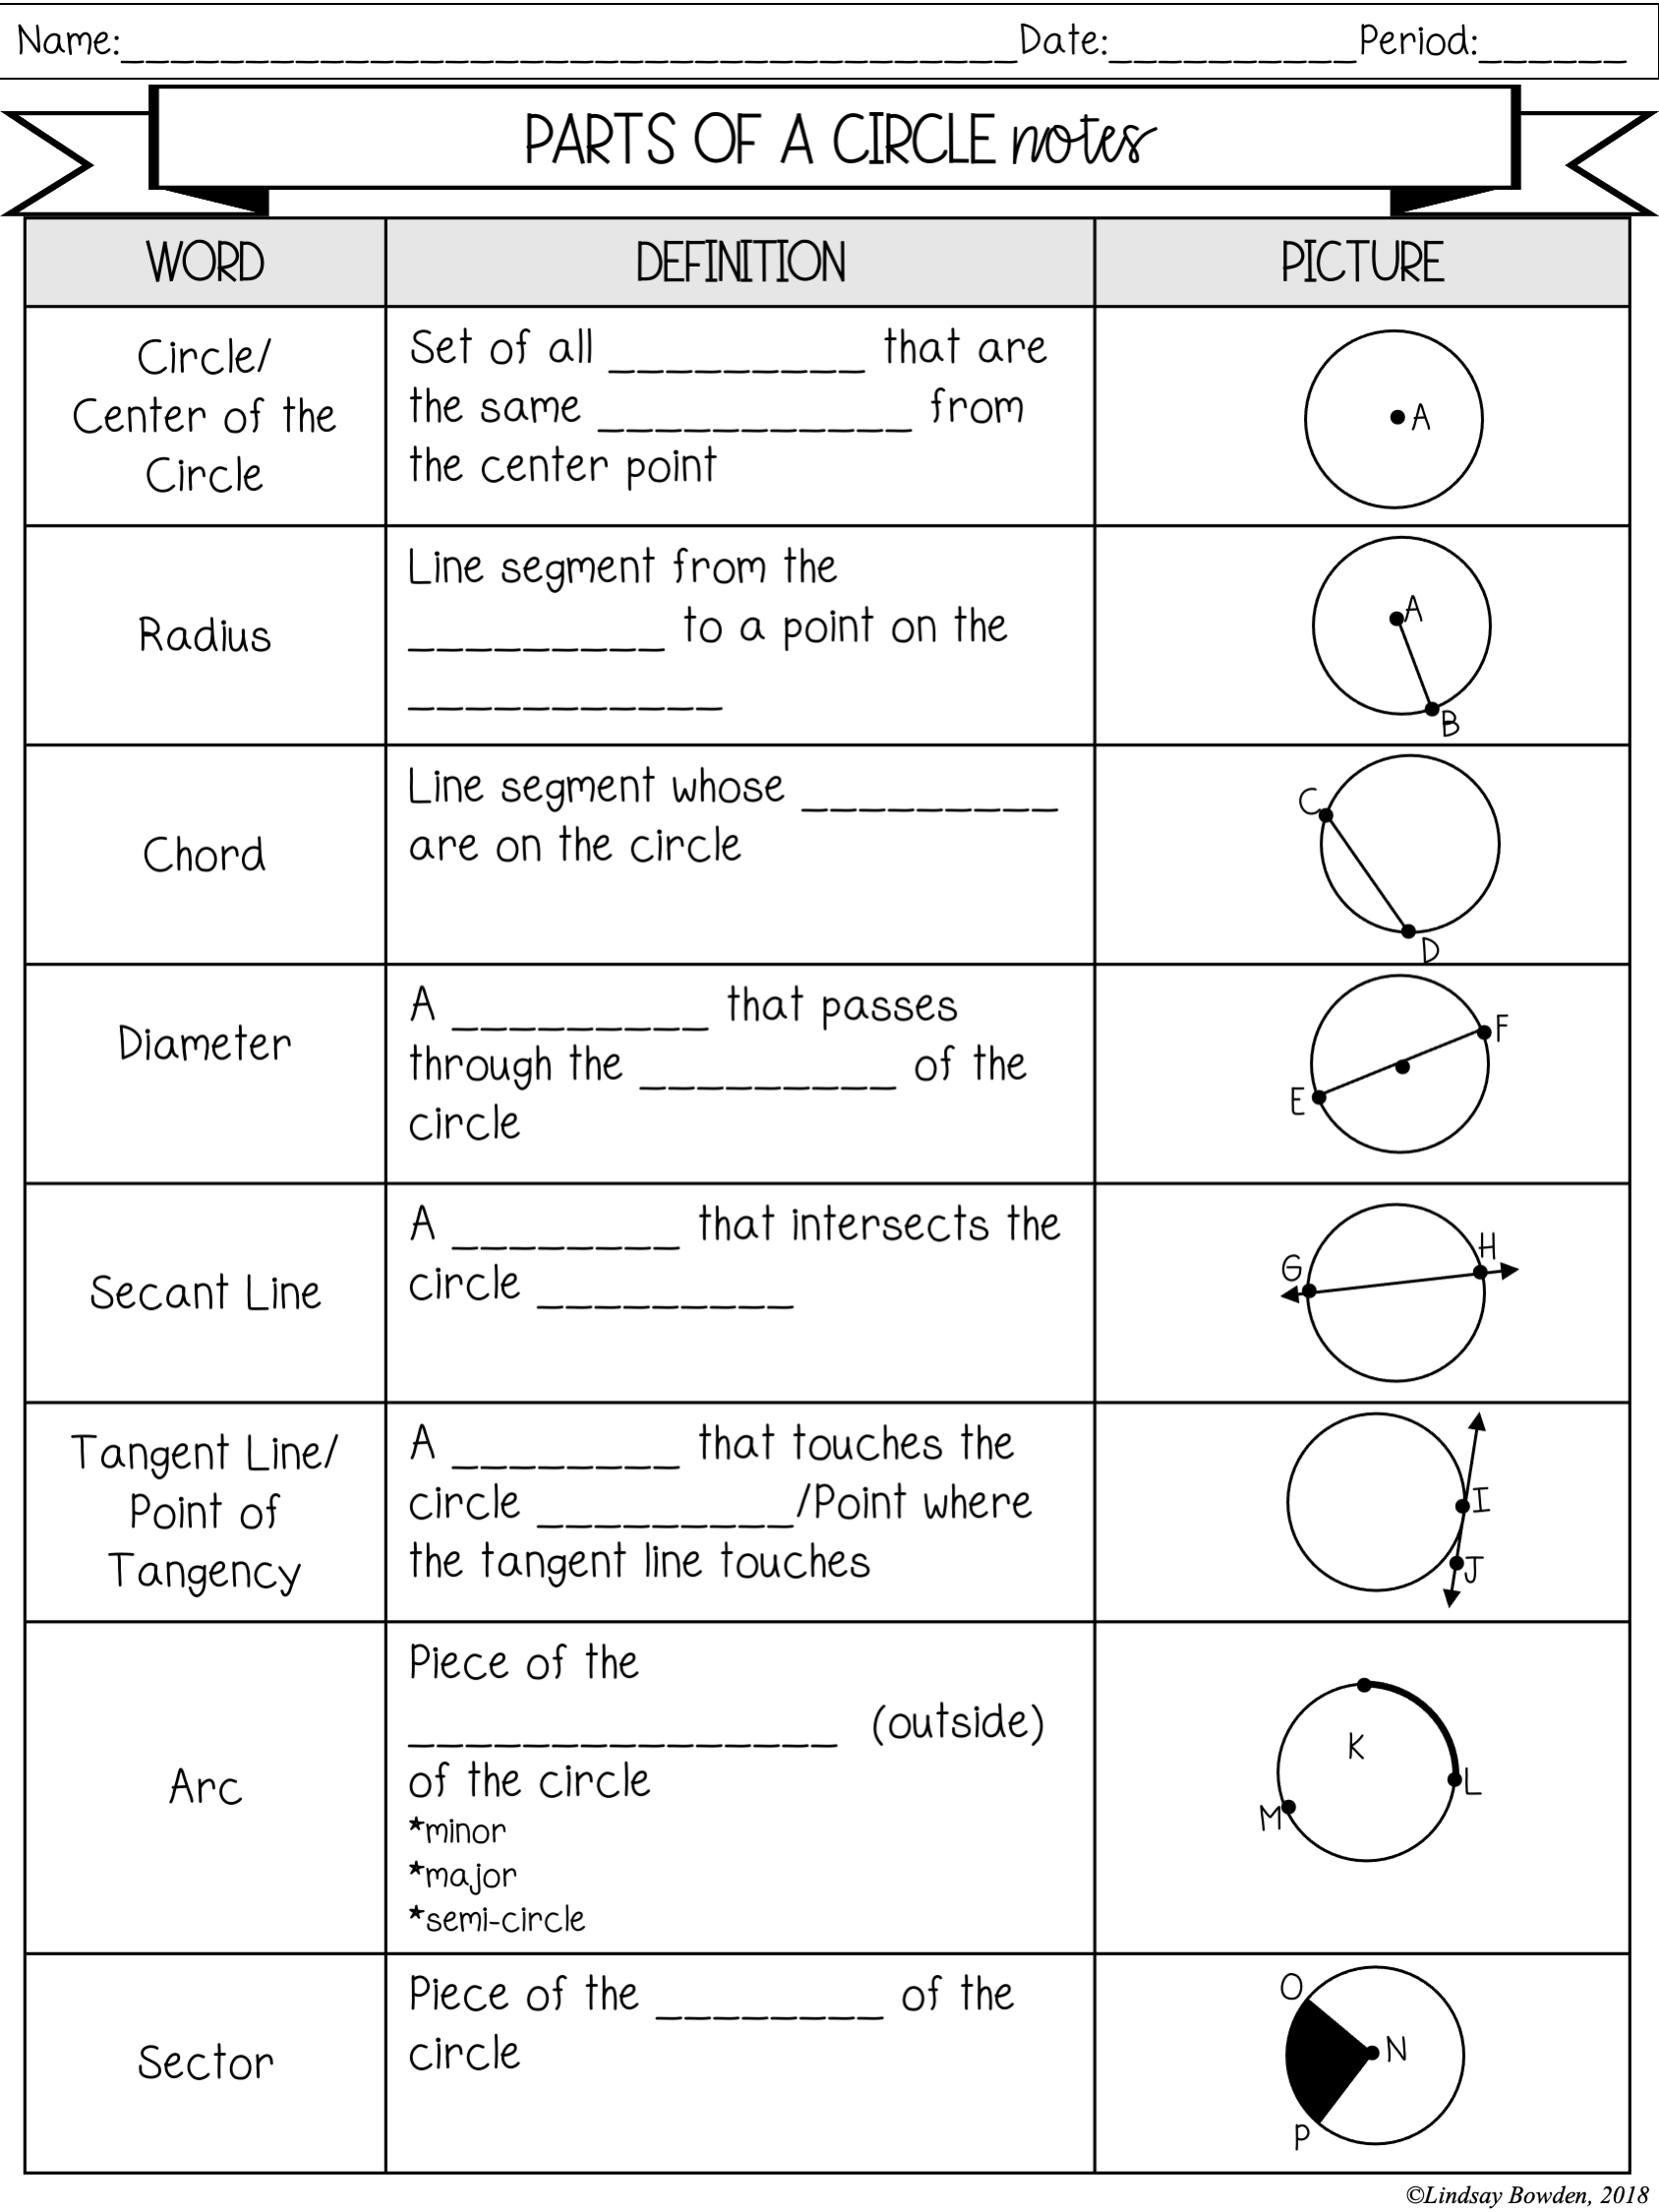 circles-notes-and-worksheets-lindsay-bowden